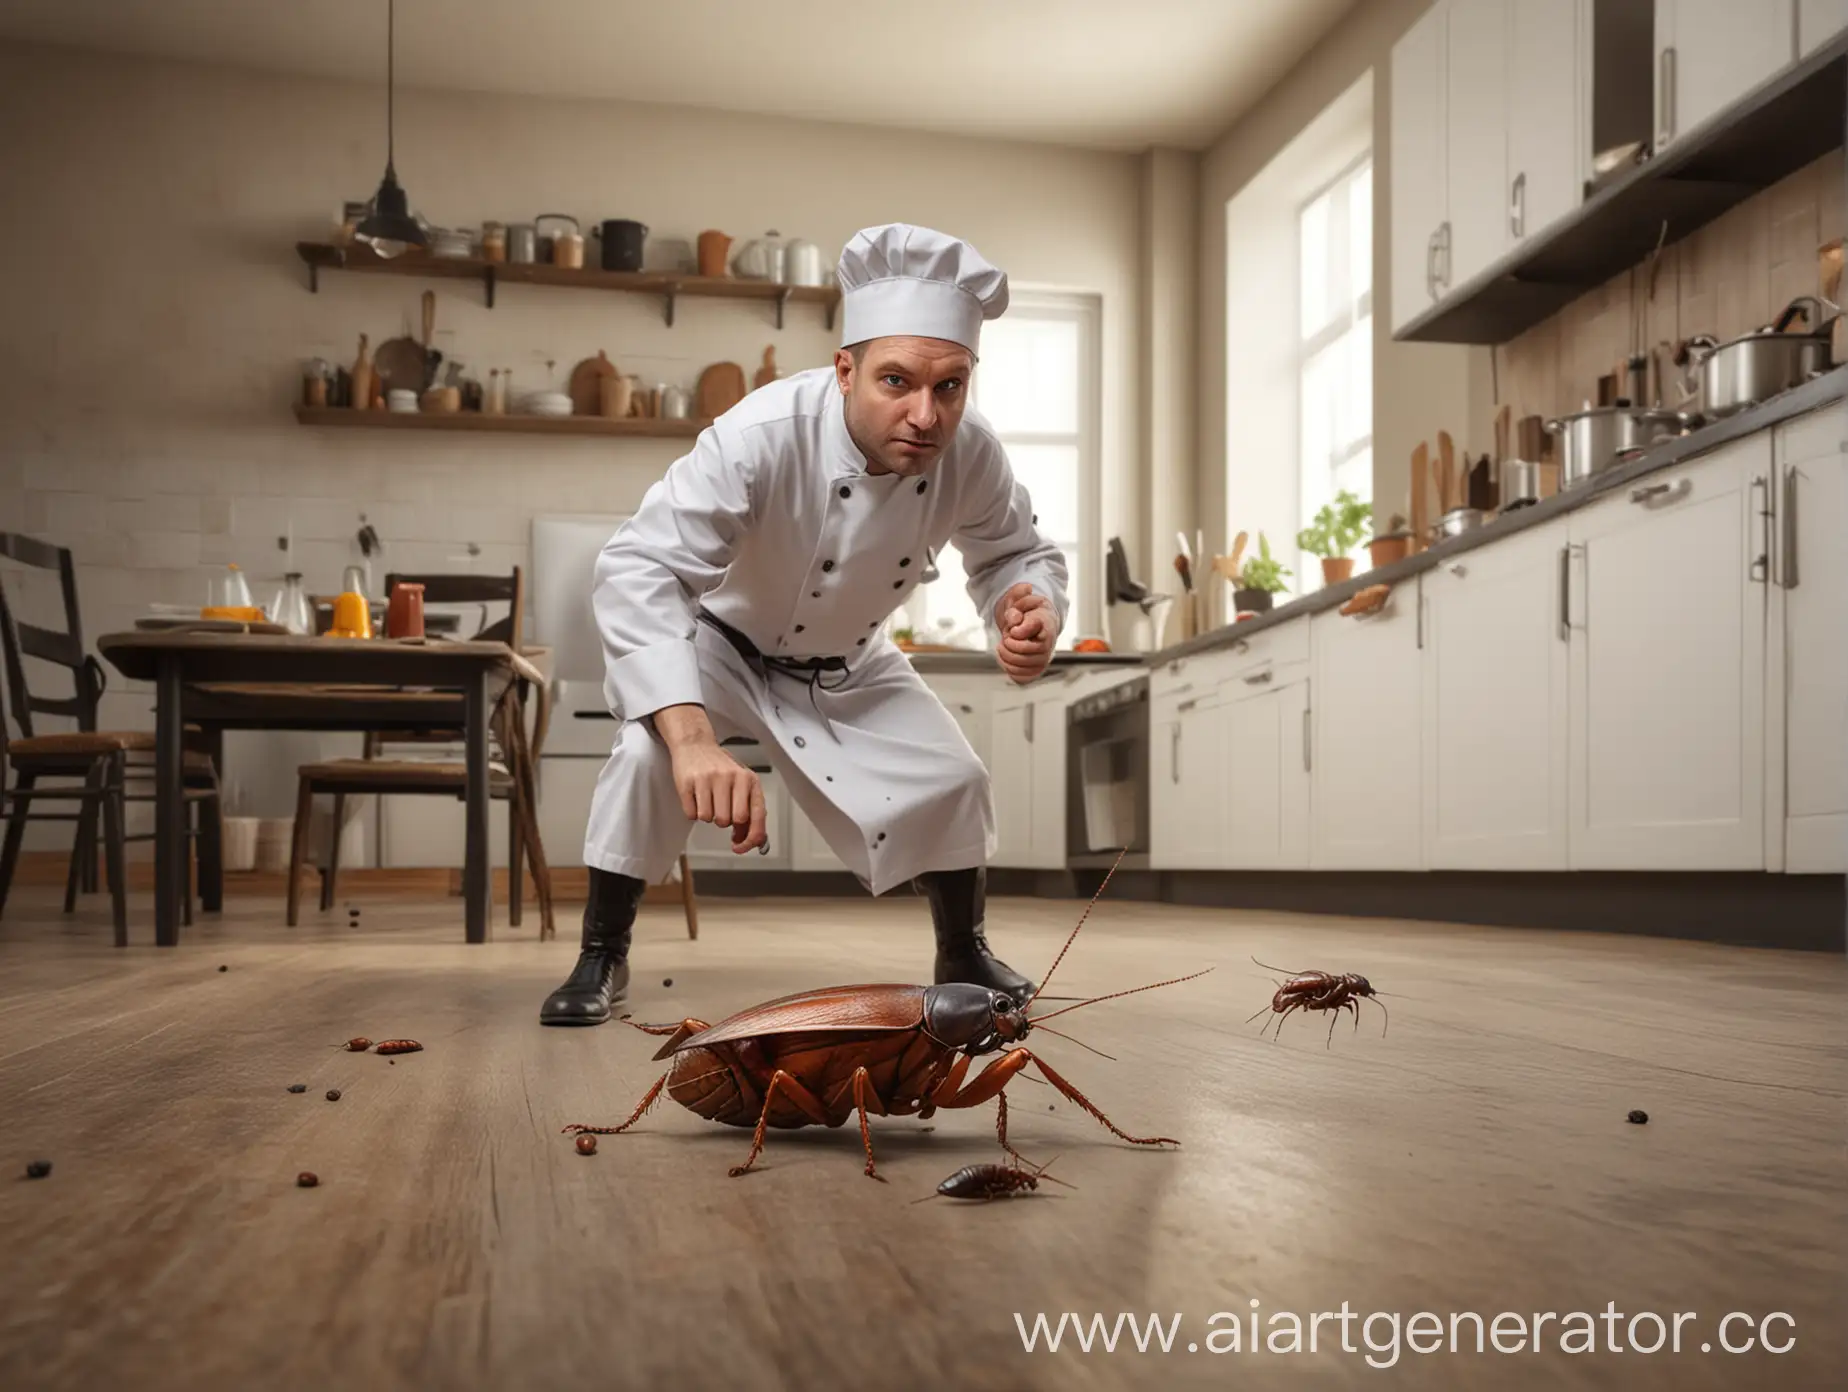 На фоне кухни борются Таракан большой человеческих размеров и шеф повар, фотореализм 